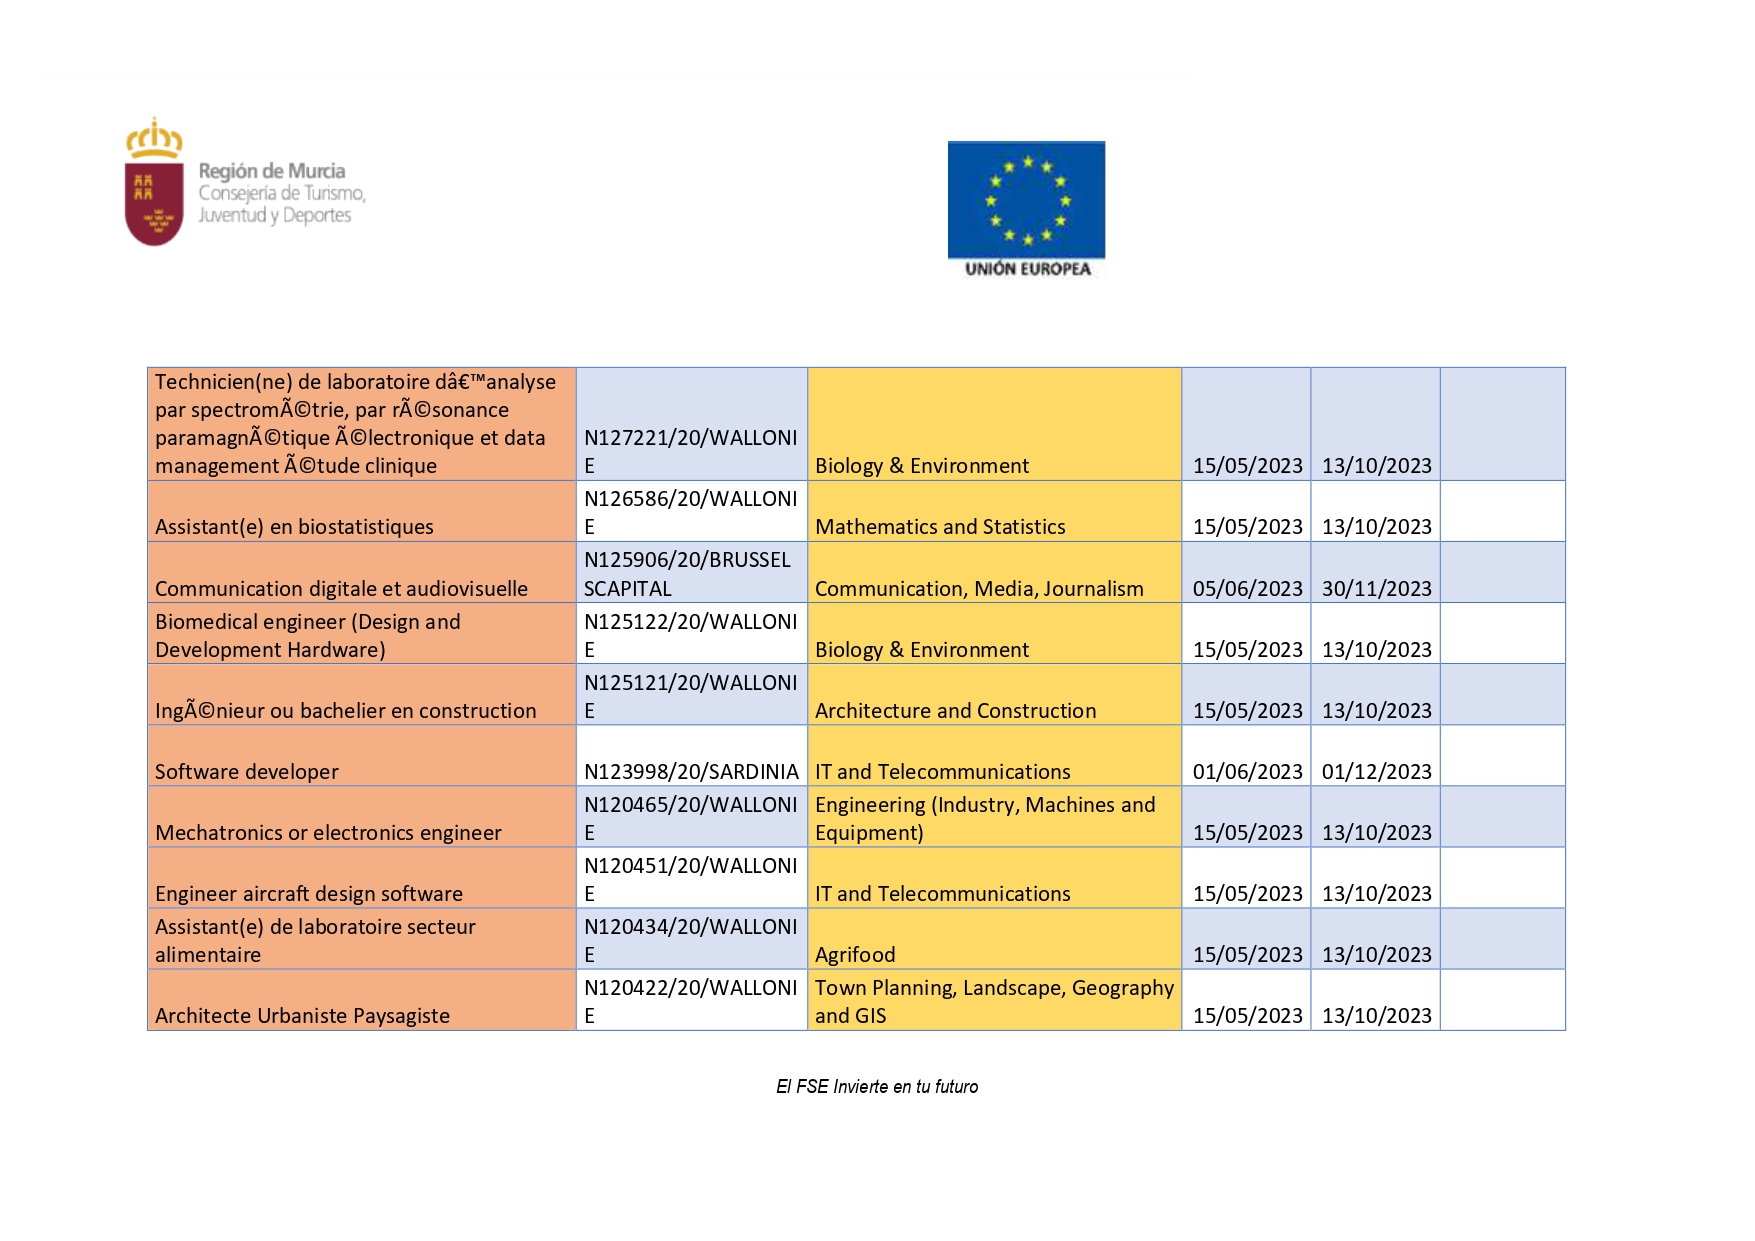 PROGRAMA DE PRÁCTICAS LABORALES REMUNERADAS EN EUROPA (Imagen 7)